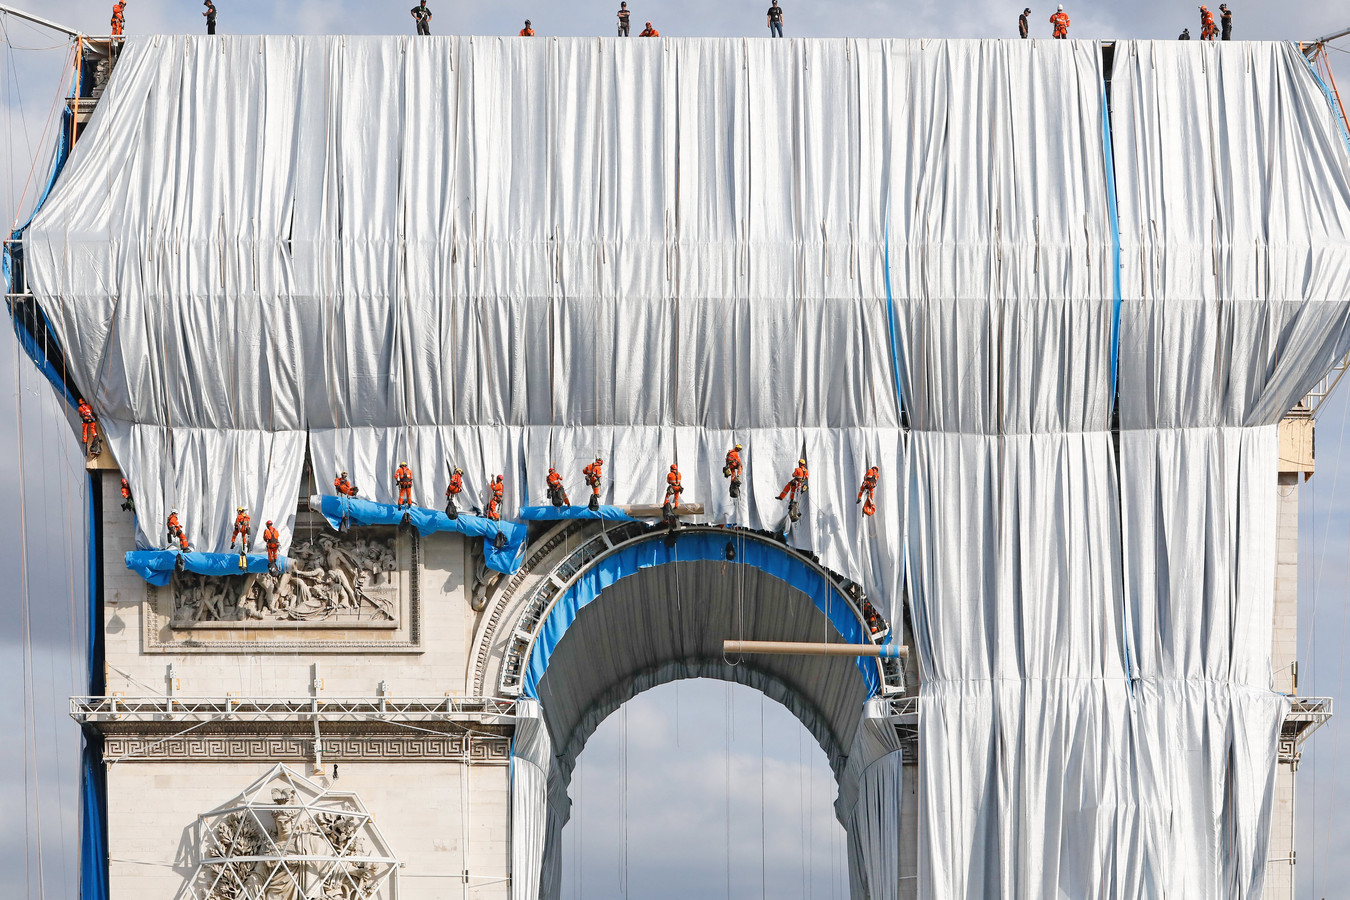 Phase finale de "l'empaquetage" de l'Arc de Triomphe avec 25 000 m² de tissu recyclable en polypropylène argent bleuté et 3000 mètres de corde rouge de la même matière